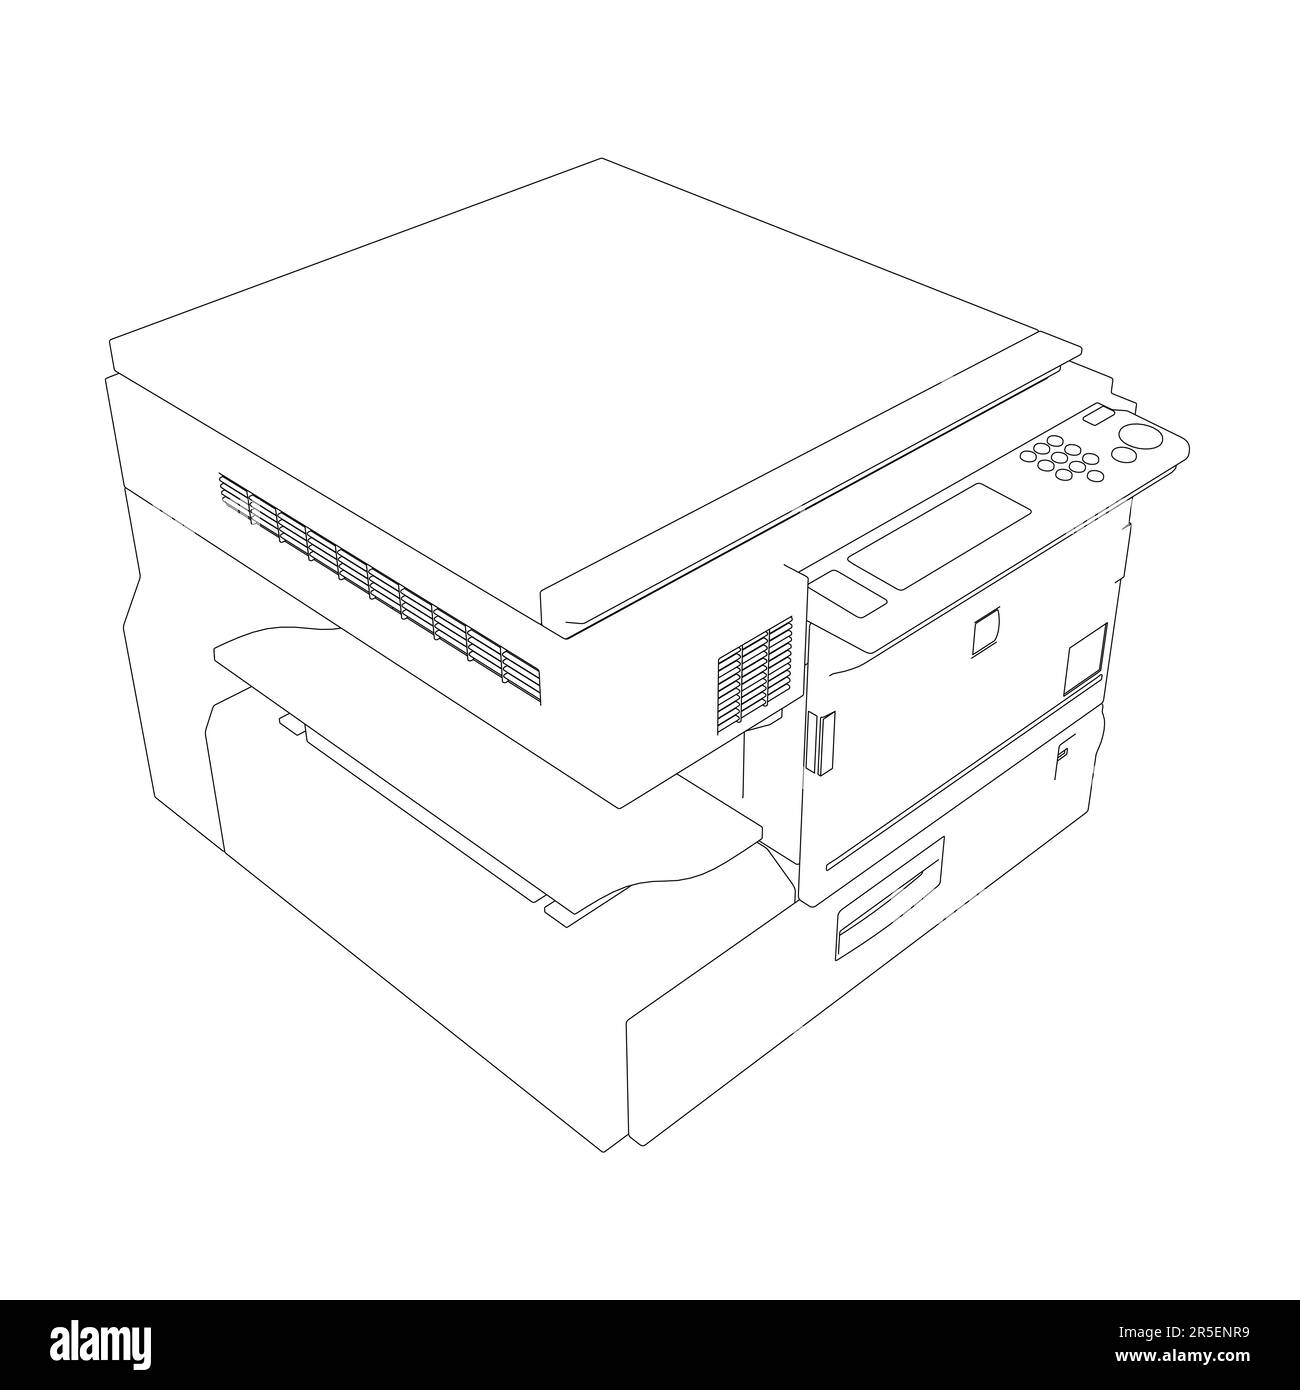 Umriss eines Bürokopierers aus schwarzen, auf weißem Hintergrund isolierten Linien. Isometrische Ansicht. 3D. Vektordarstellung. Stock Vektor